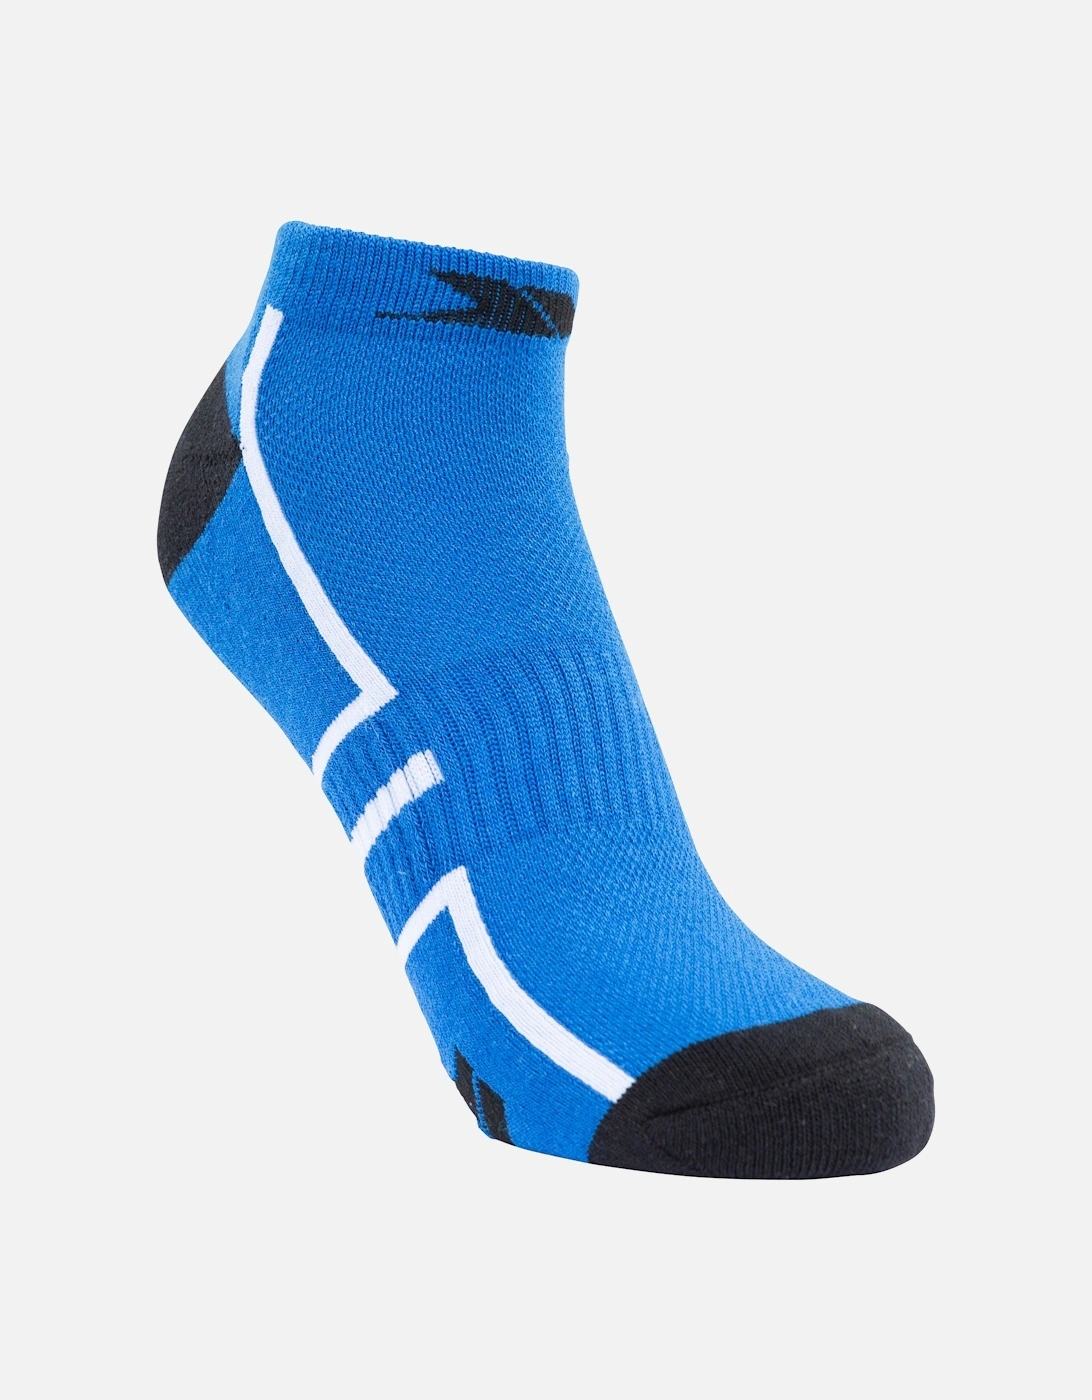 Unisex Adult Dinky Trainer Socks, 6 of 5